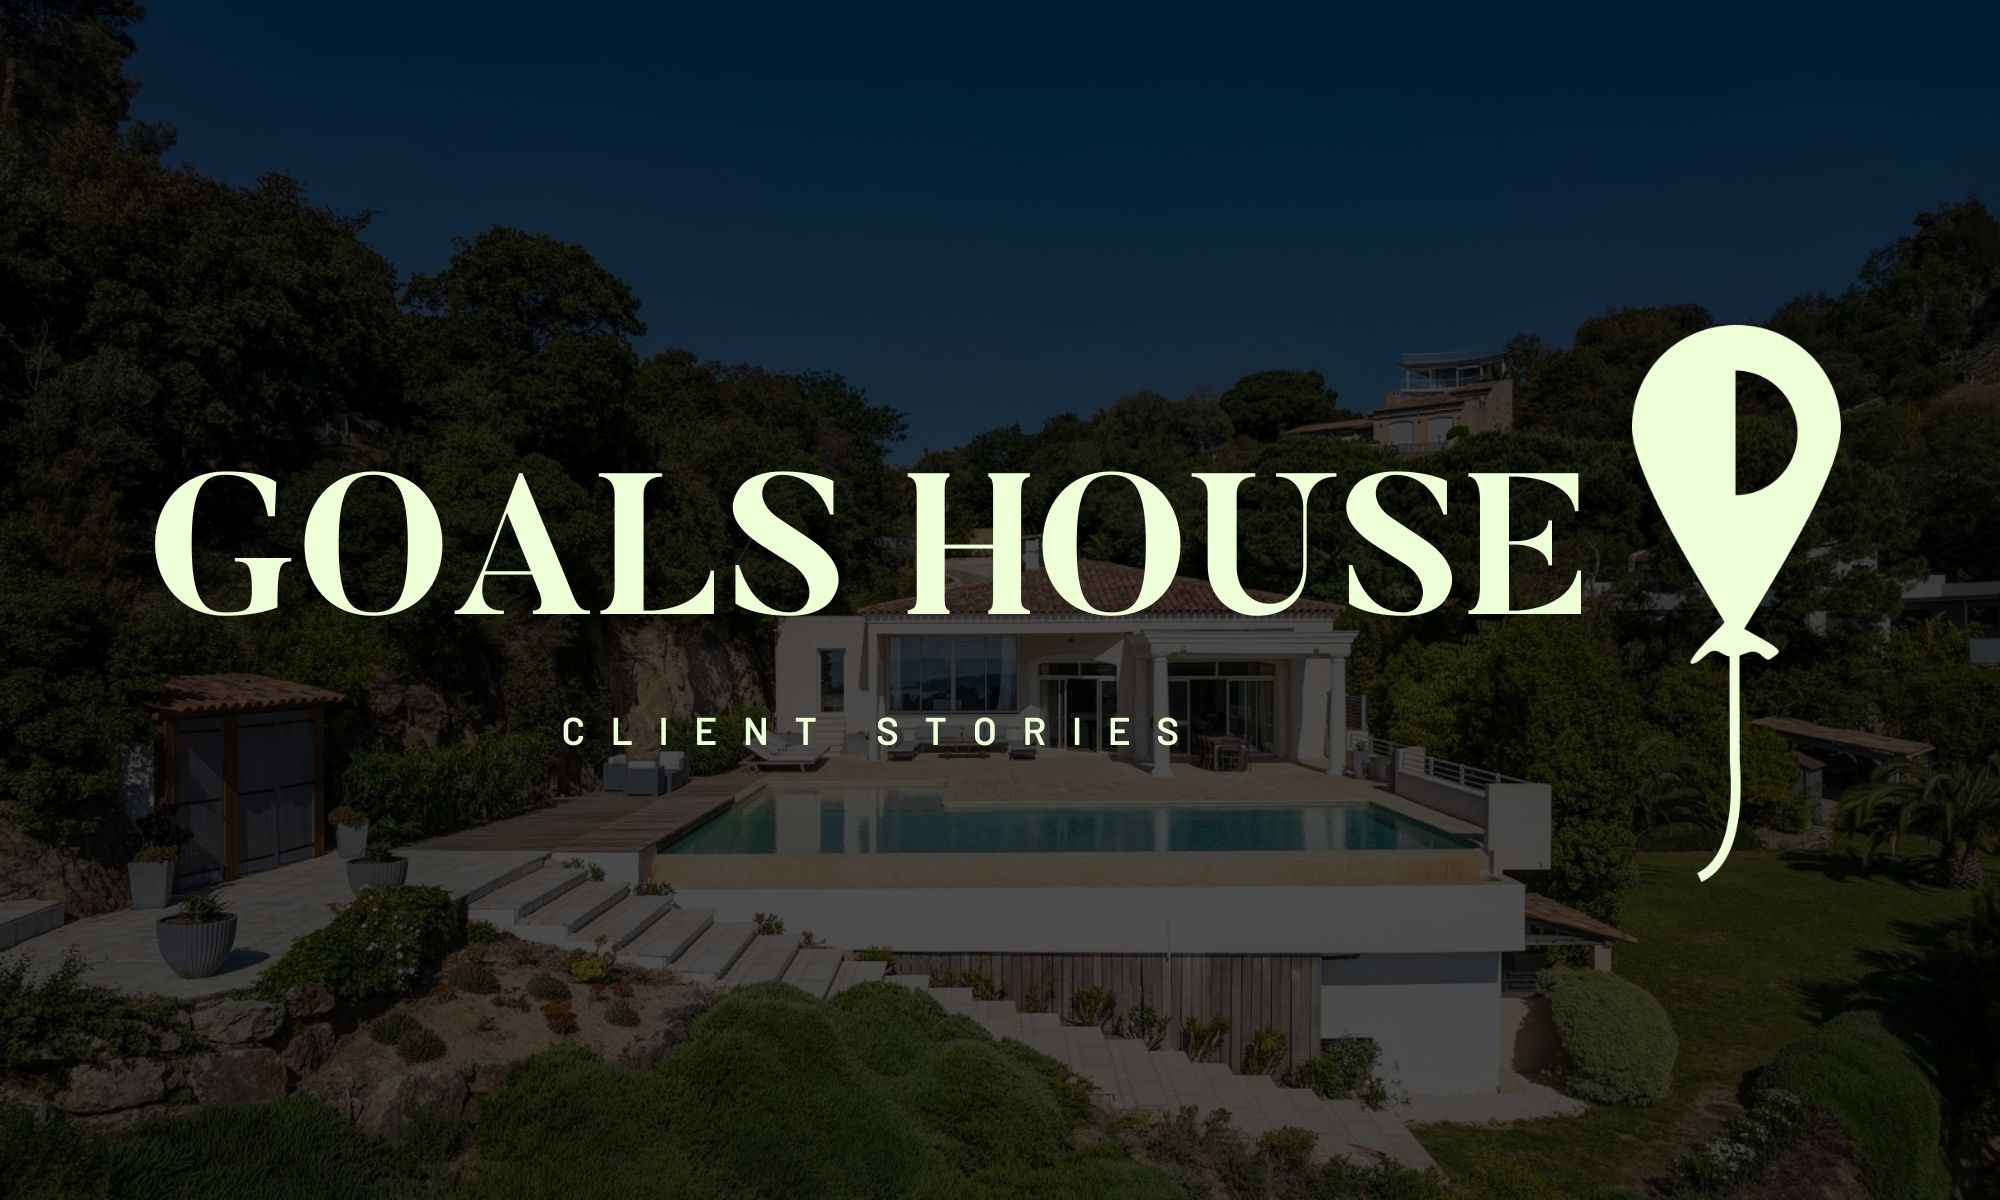 Client Stories - Goals House